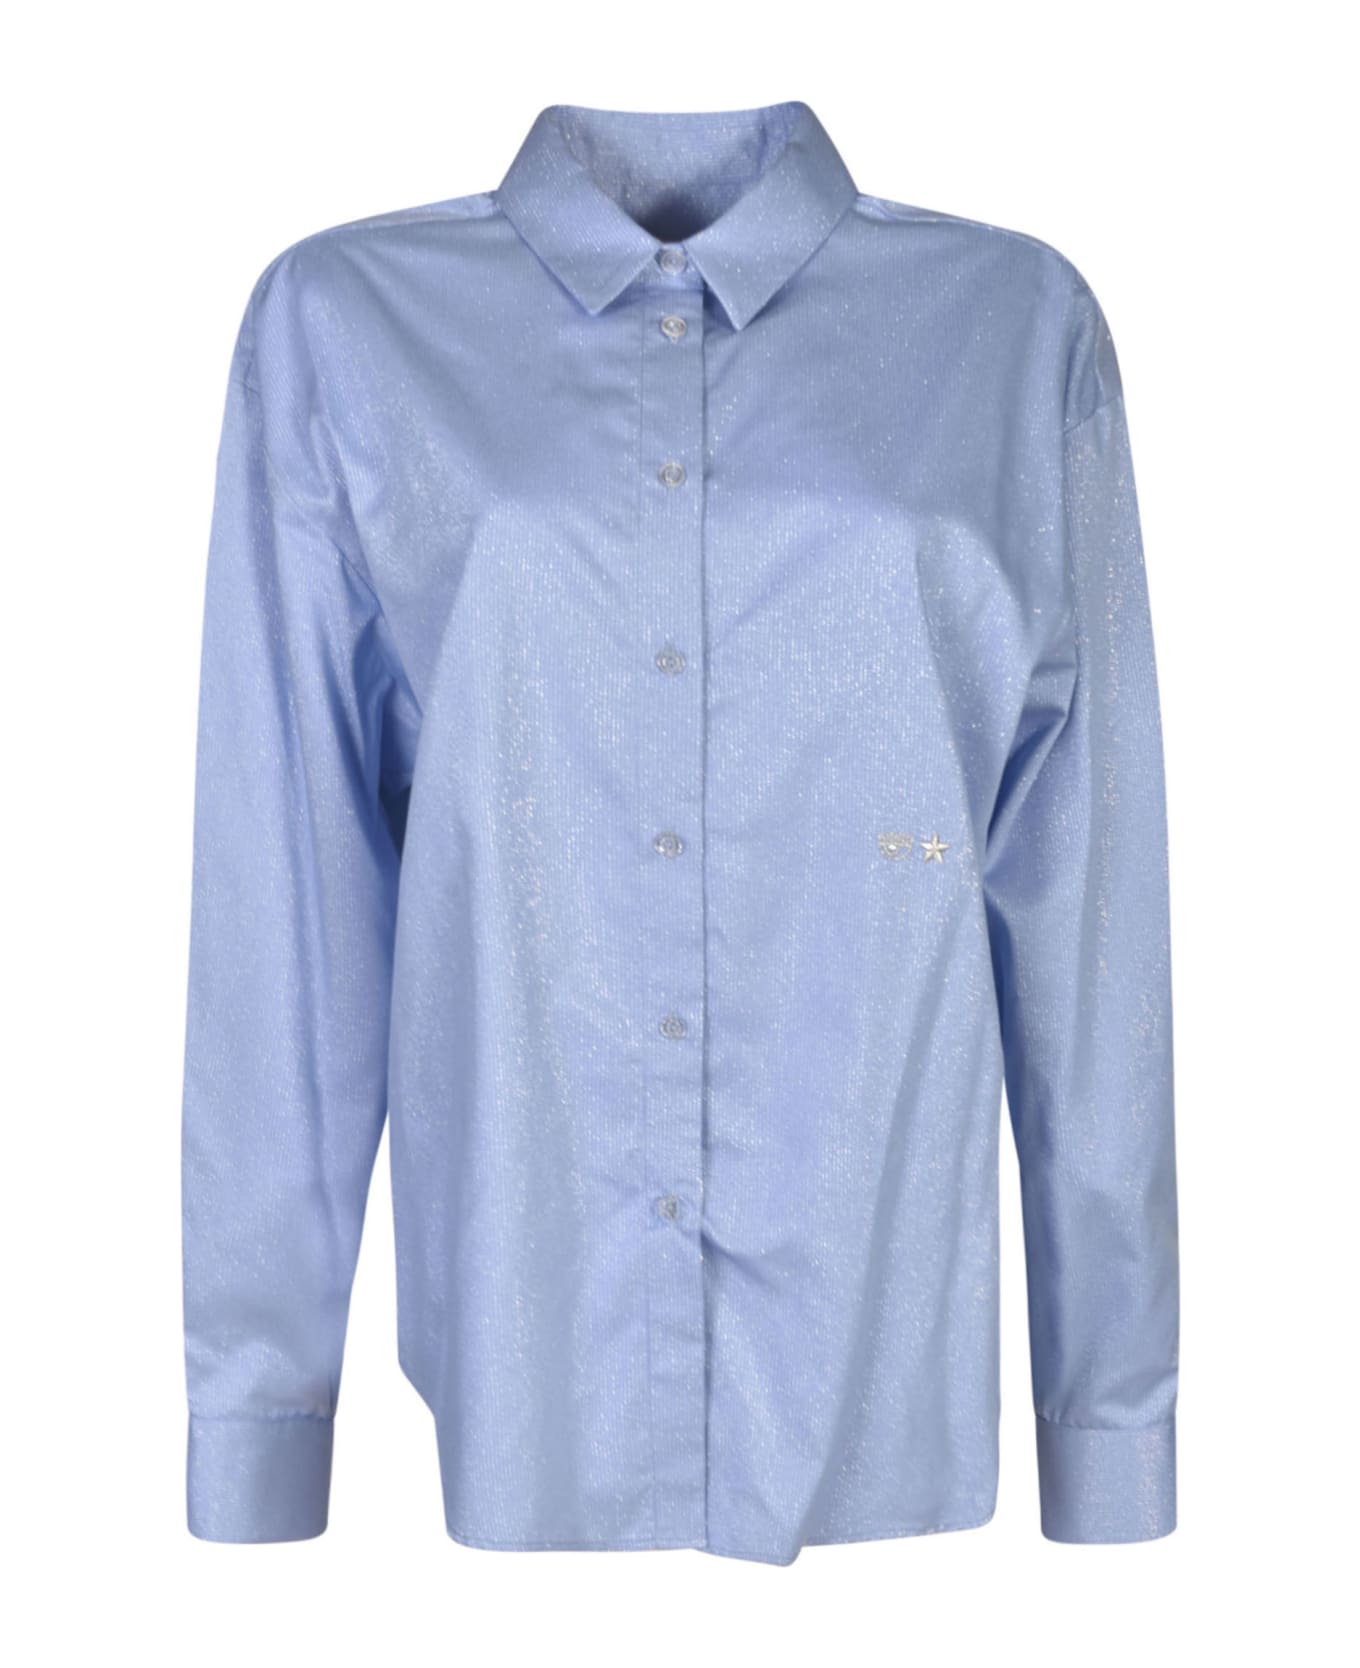 Chiara Ferragni Long-sleeved Glittered Shirt - Blue シャツ